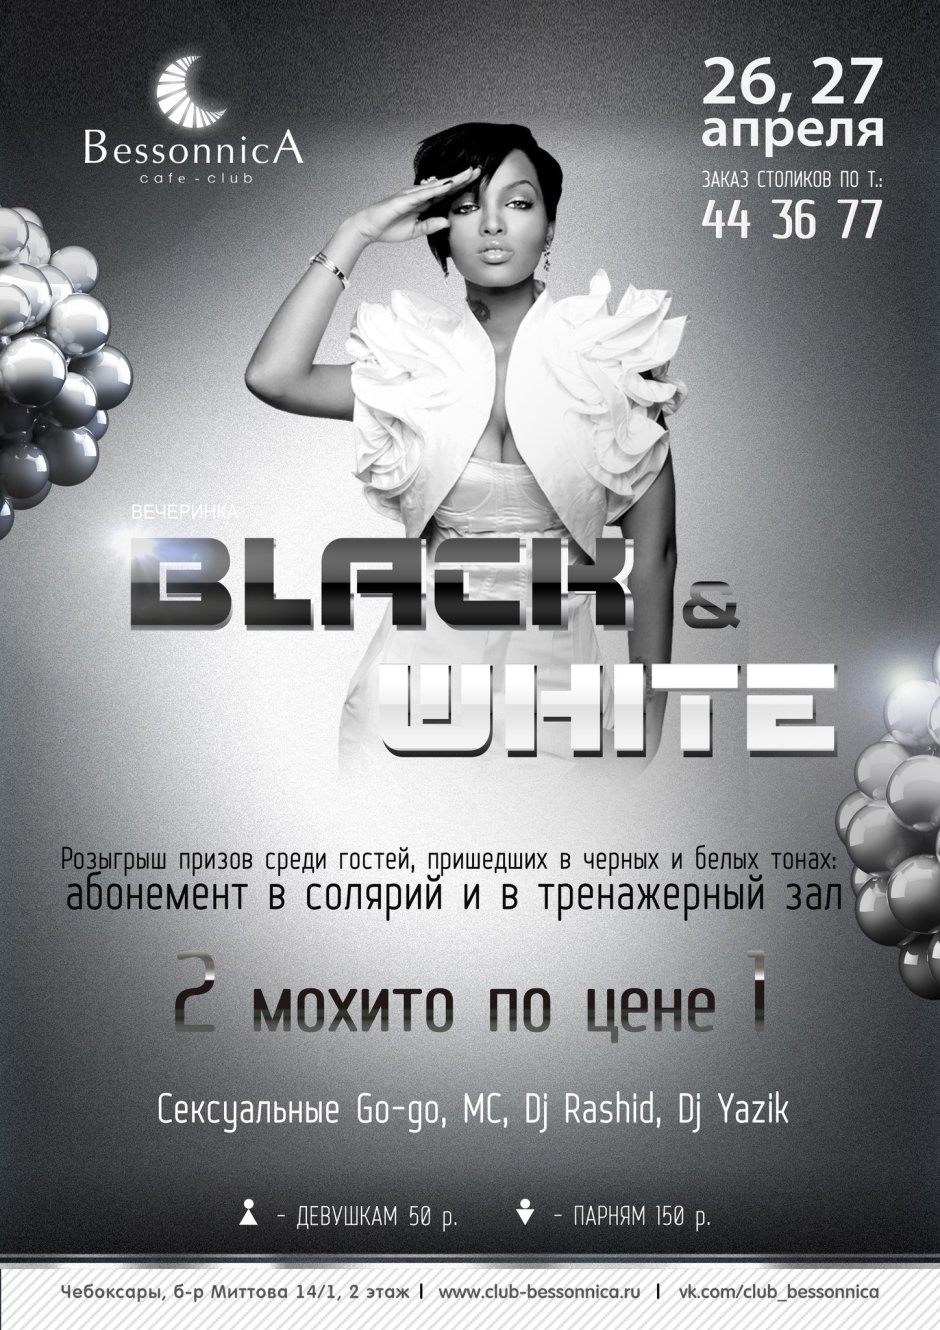 Черно белый дресс код